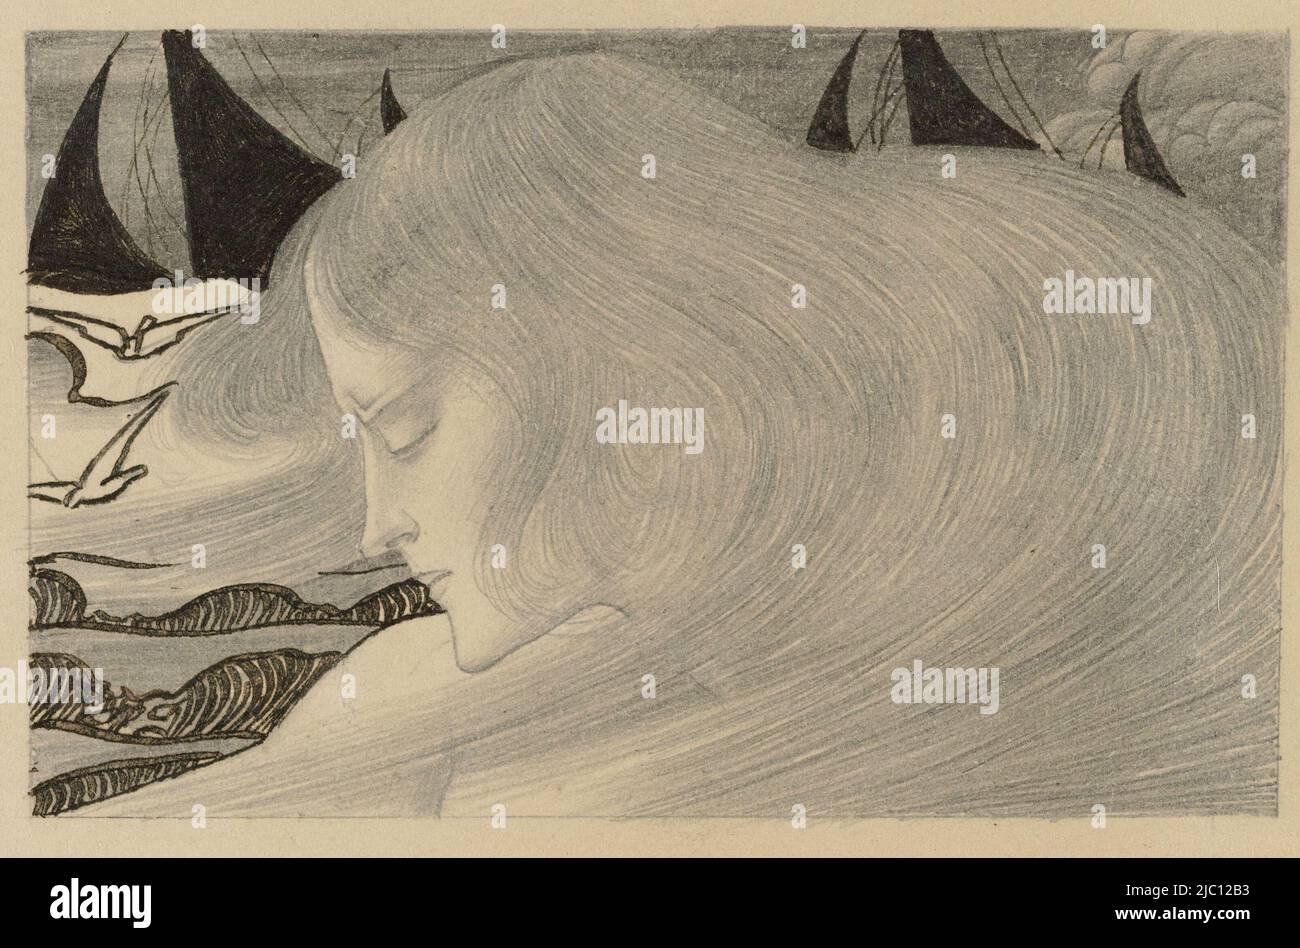 Junge Frau mit welligen Haaren vor einem Meer von Schiffen, Zeichner: Jan Toorop, 18-Apr-1900, Papier, Stift, H 91 mm × B 169 mm Stockfoto